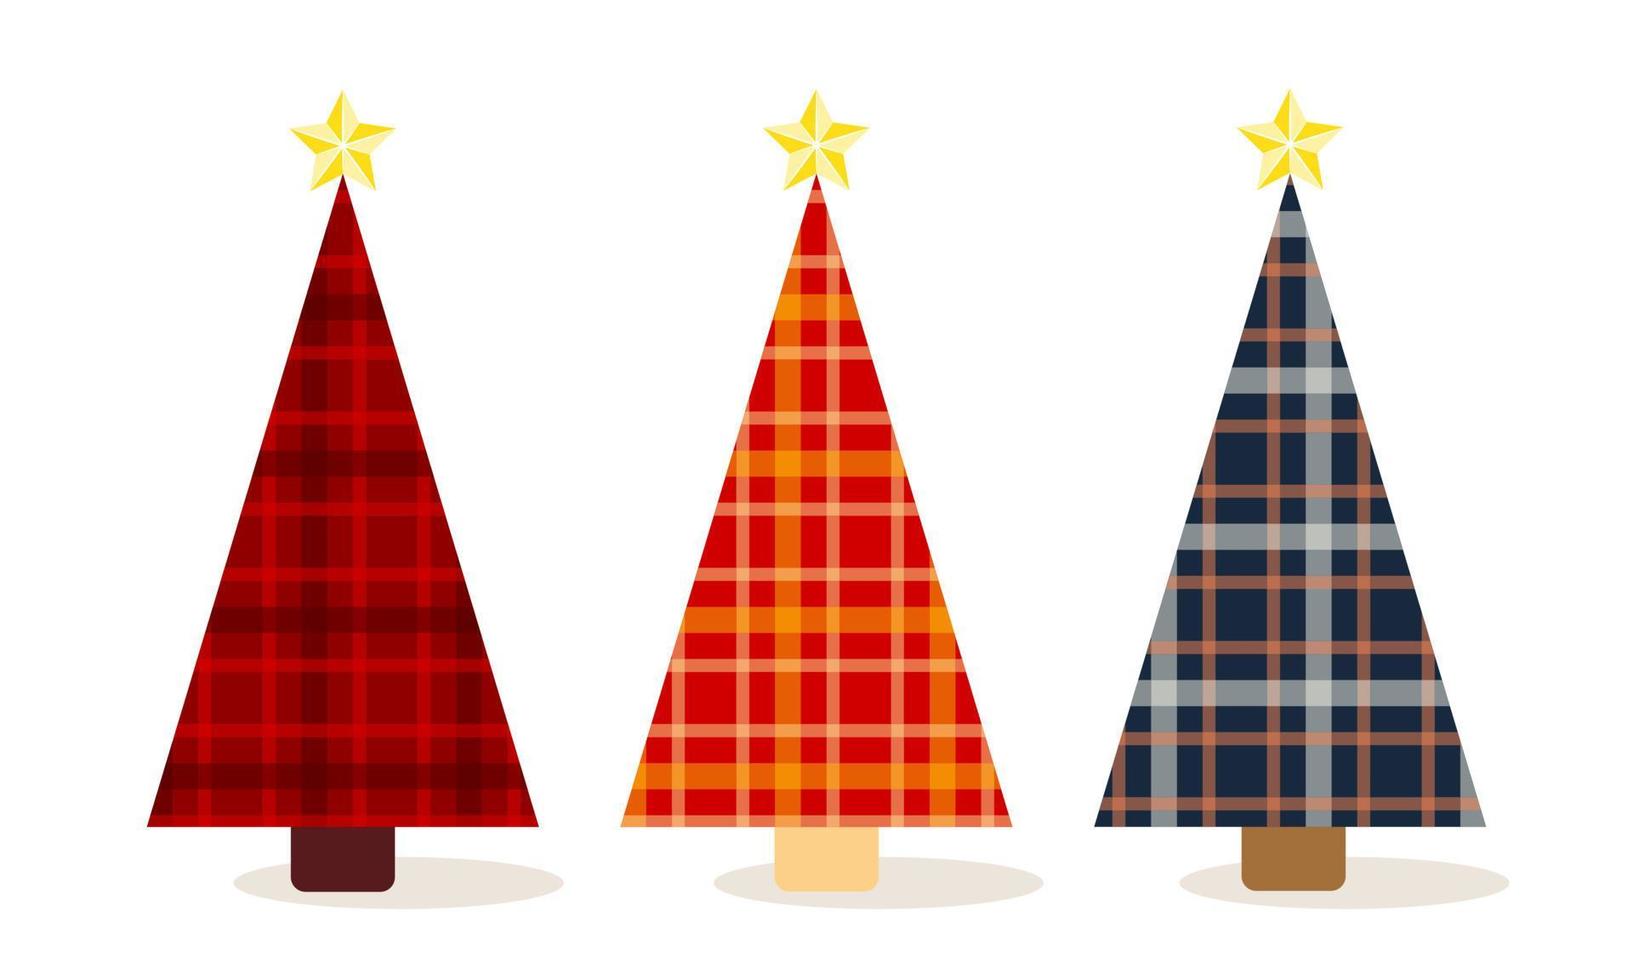 ilustração de clipart com árvores de natal geométricas simples em textura xadrez em fundo isolado. design para decoração de casa de natal, saudações de férias, presentes e celebração de natal e ano novo. vetor